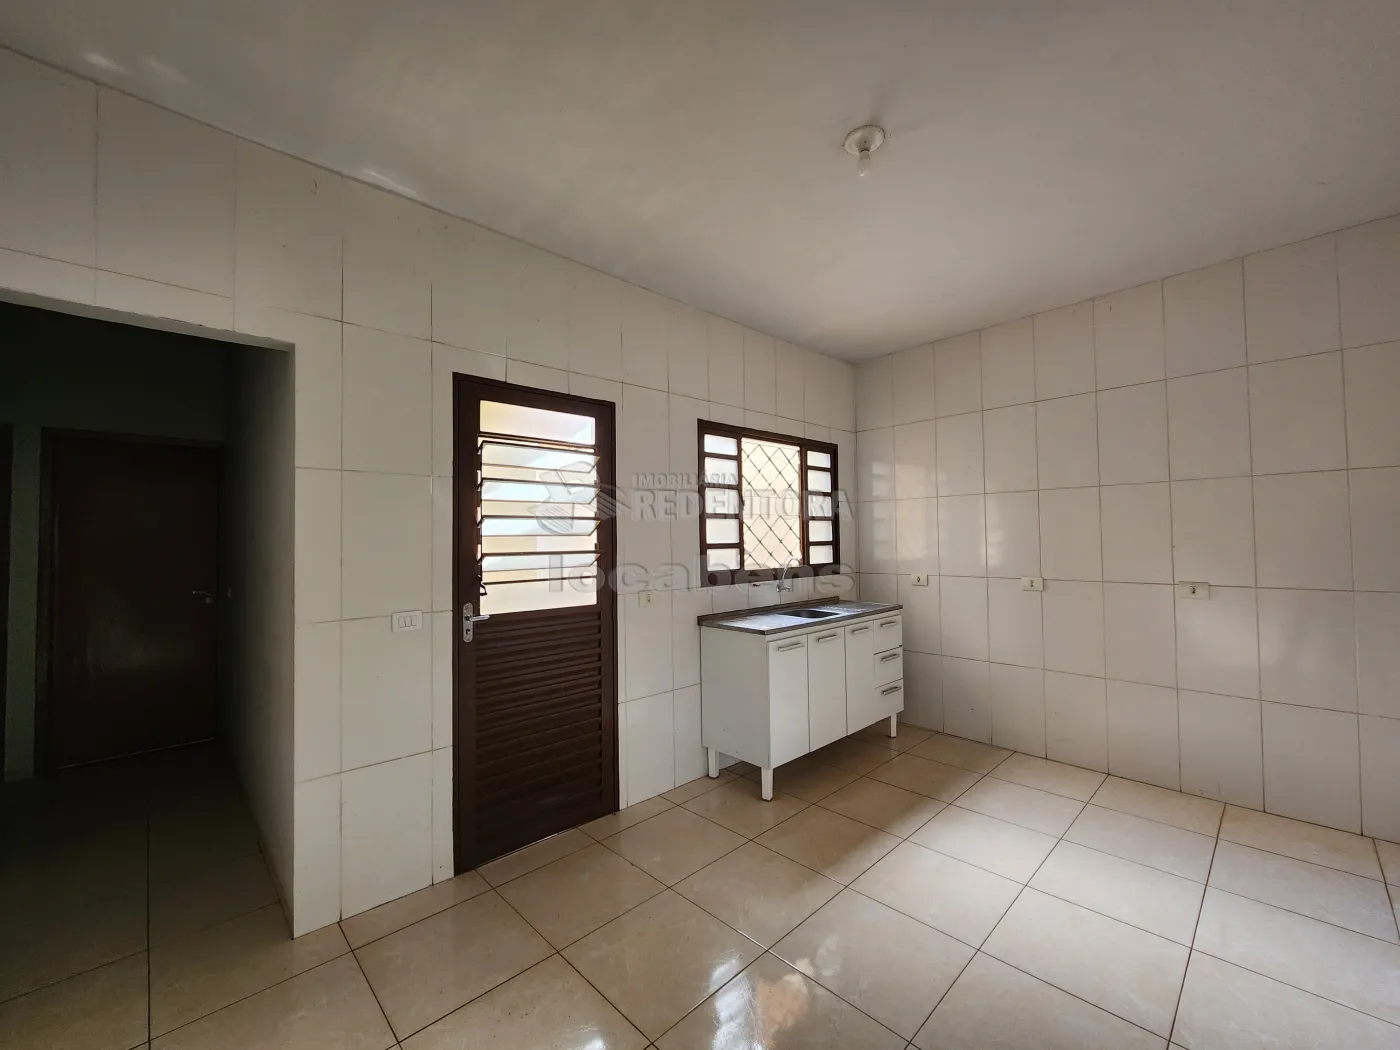 Alugar Casa / Padrão em Guapiaçu apenas R$ 1.150,00 - Foto 4